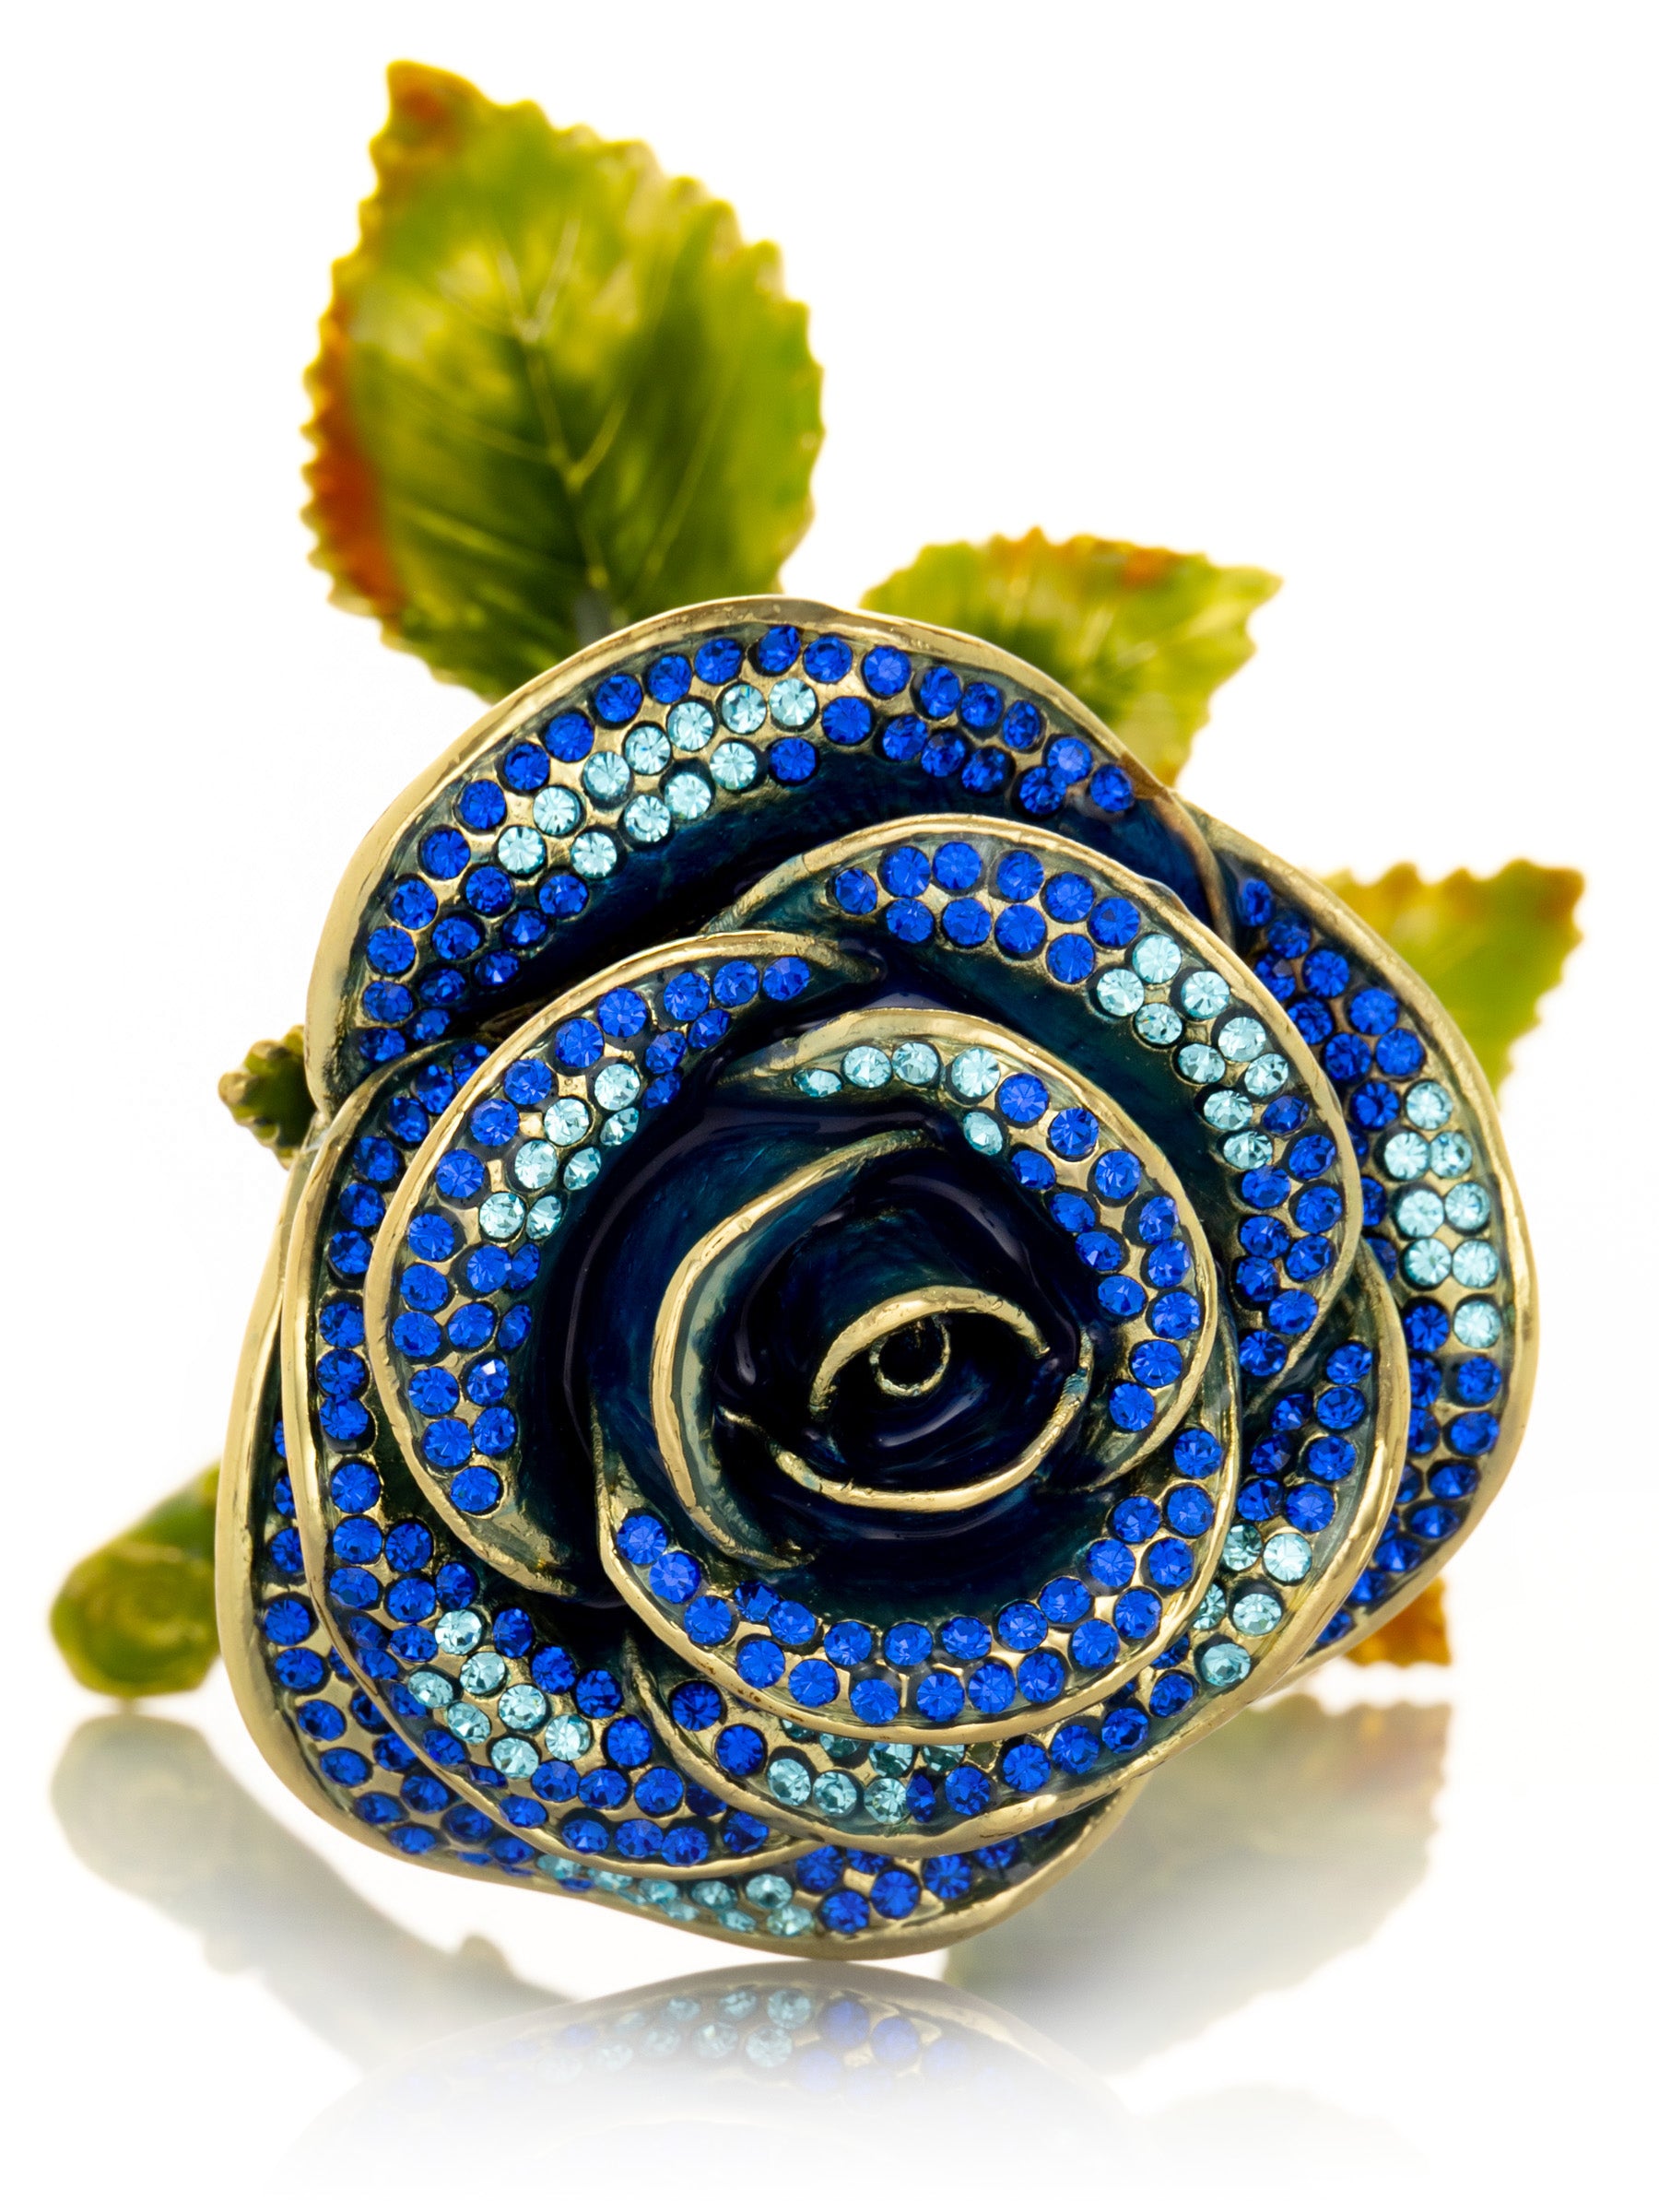 Rose bleue de la Saint-Valentin